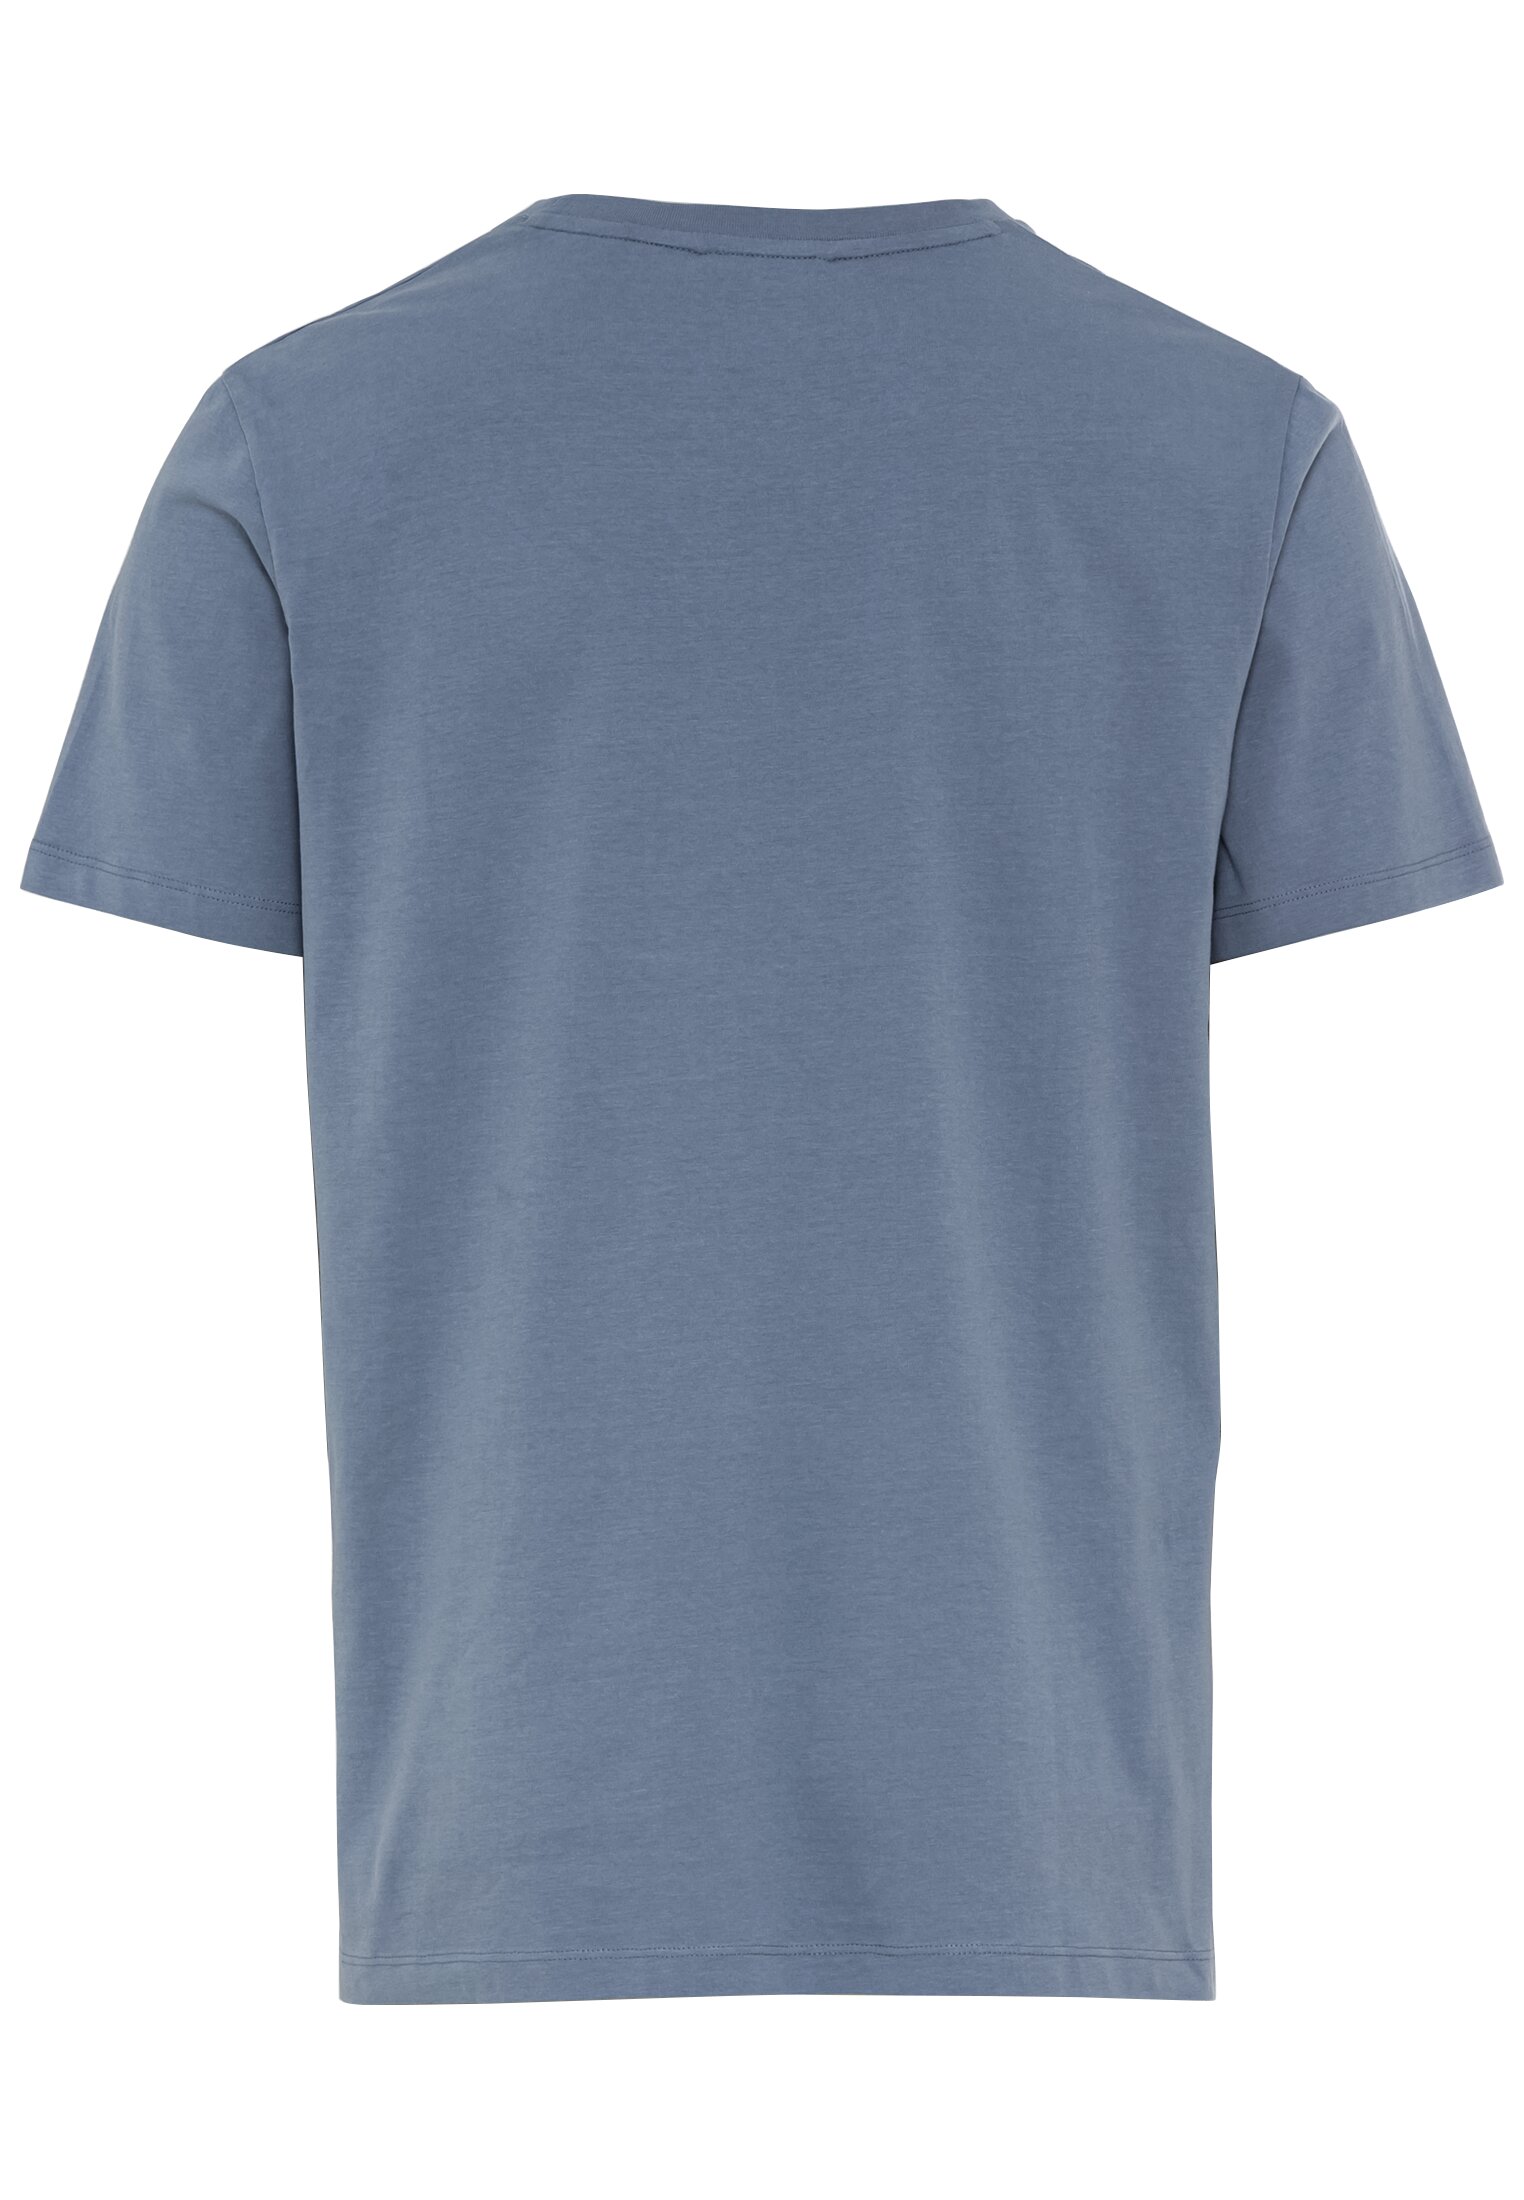 Мужская футболка Camel Active, голубая, цвет голубой, размер 56 - фото 3